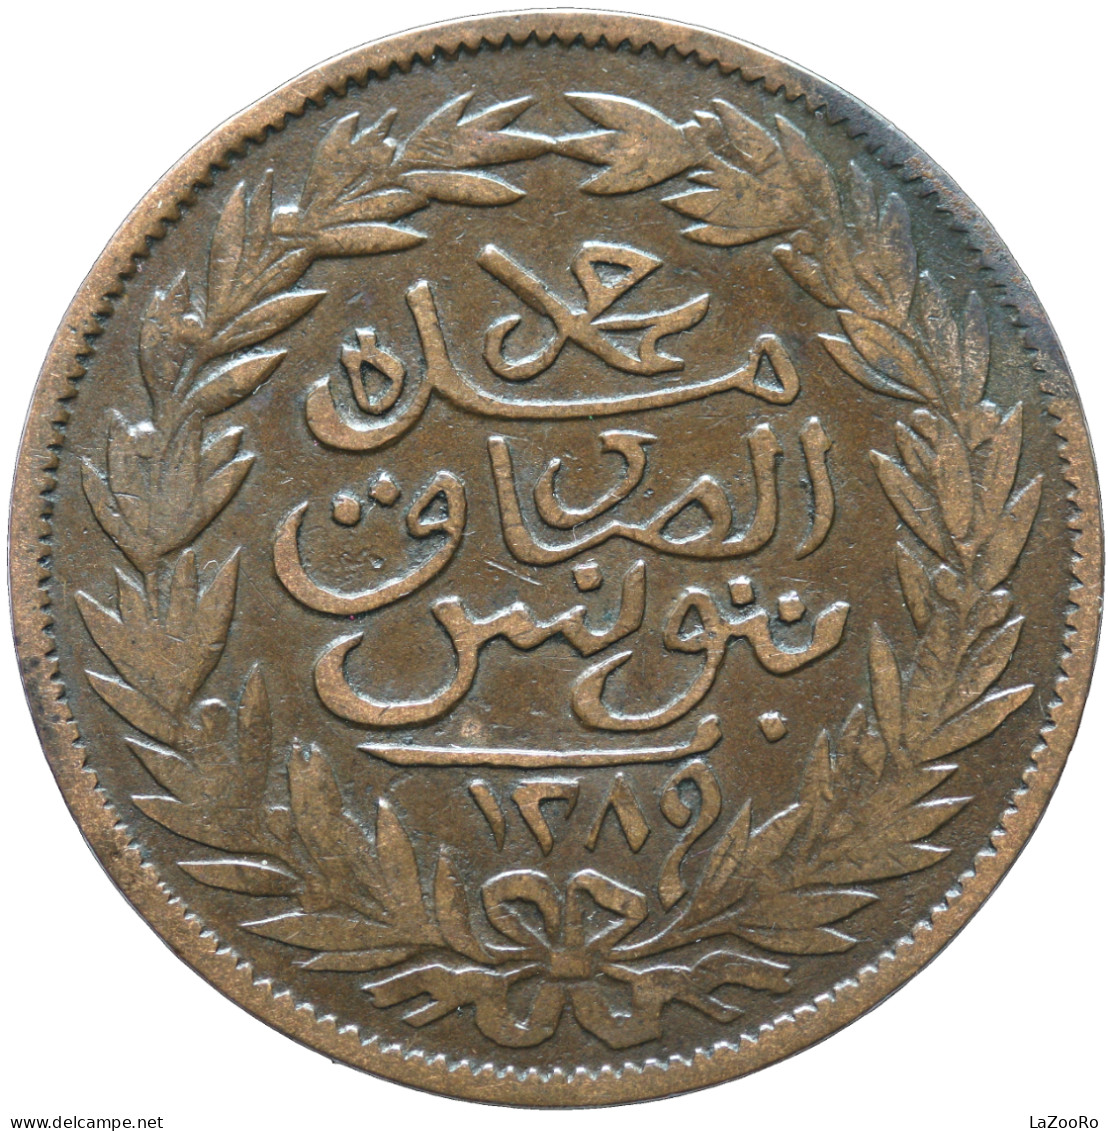 LaZooRo: Tunisia 2 Kharub 1872 VF - Tunisia